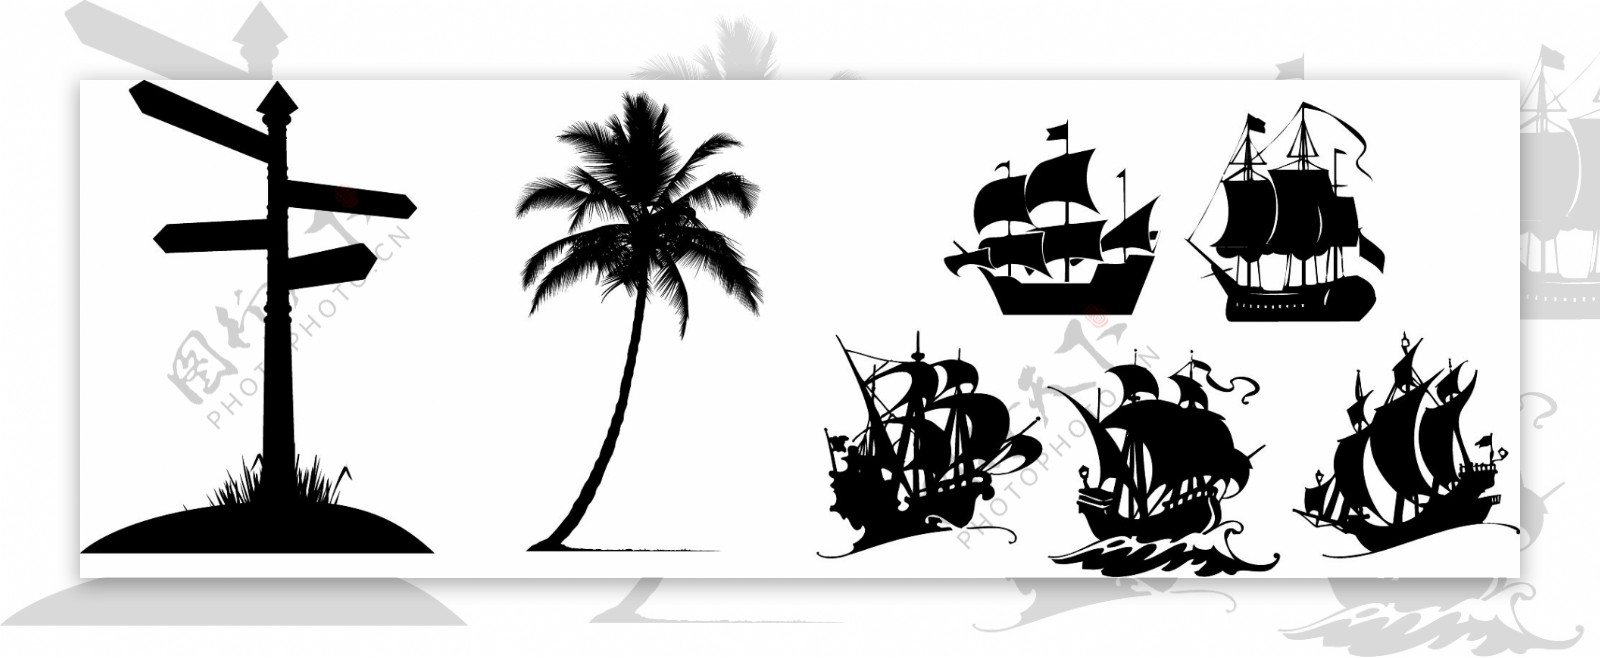 路牌椰树帆船剪影素材图片